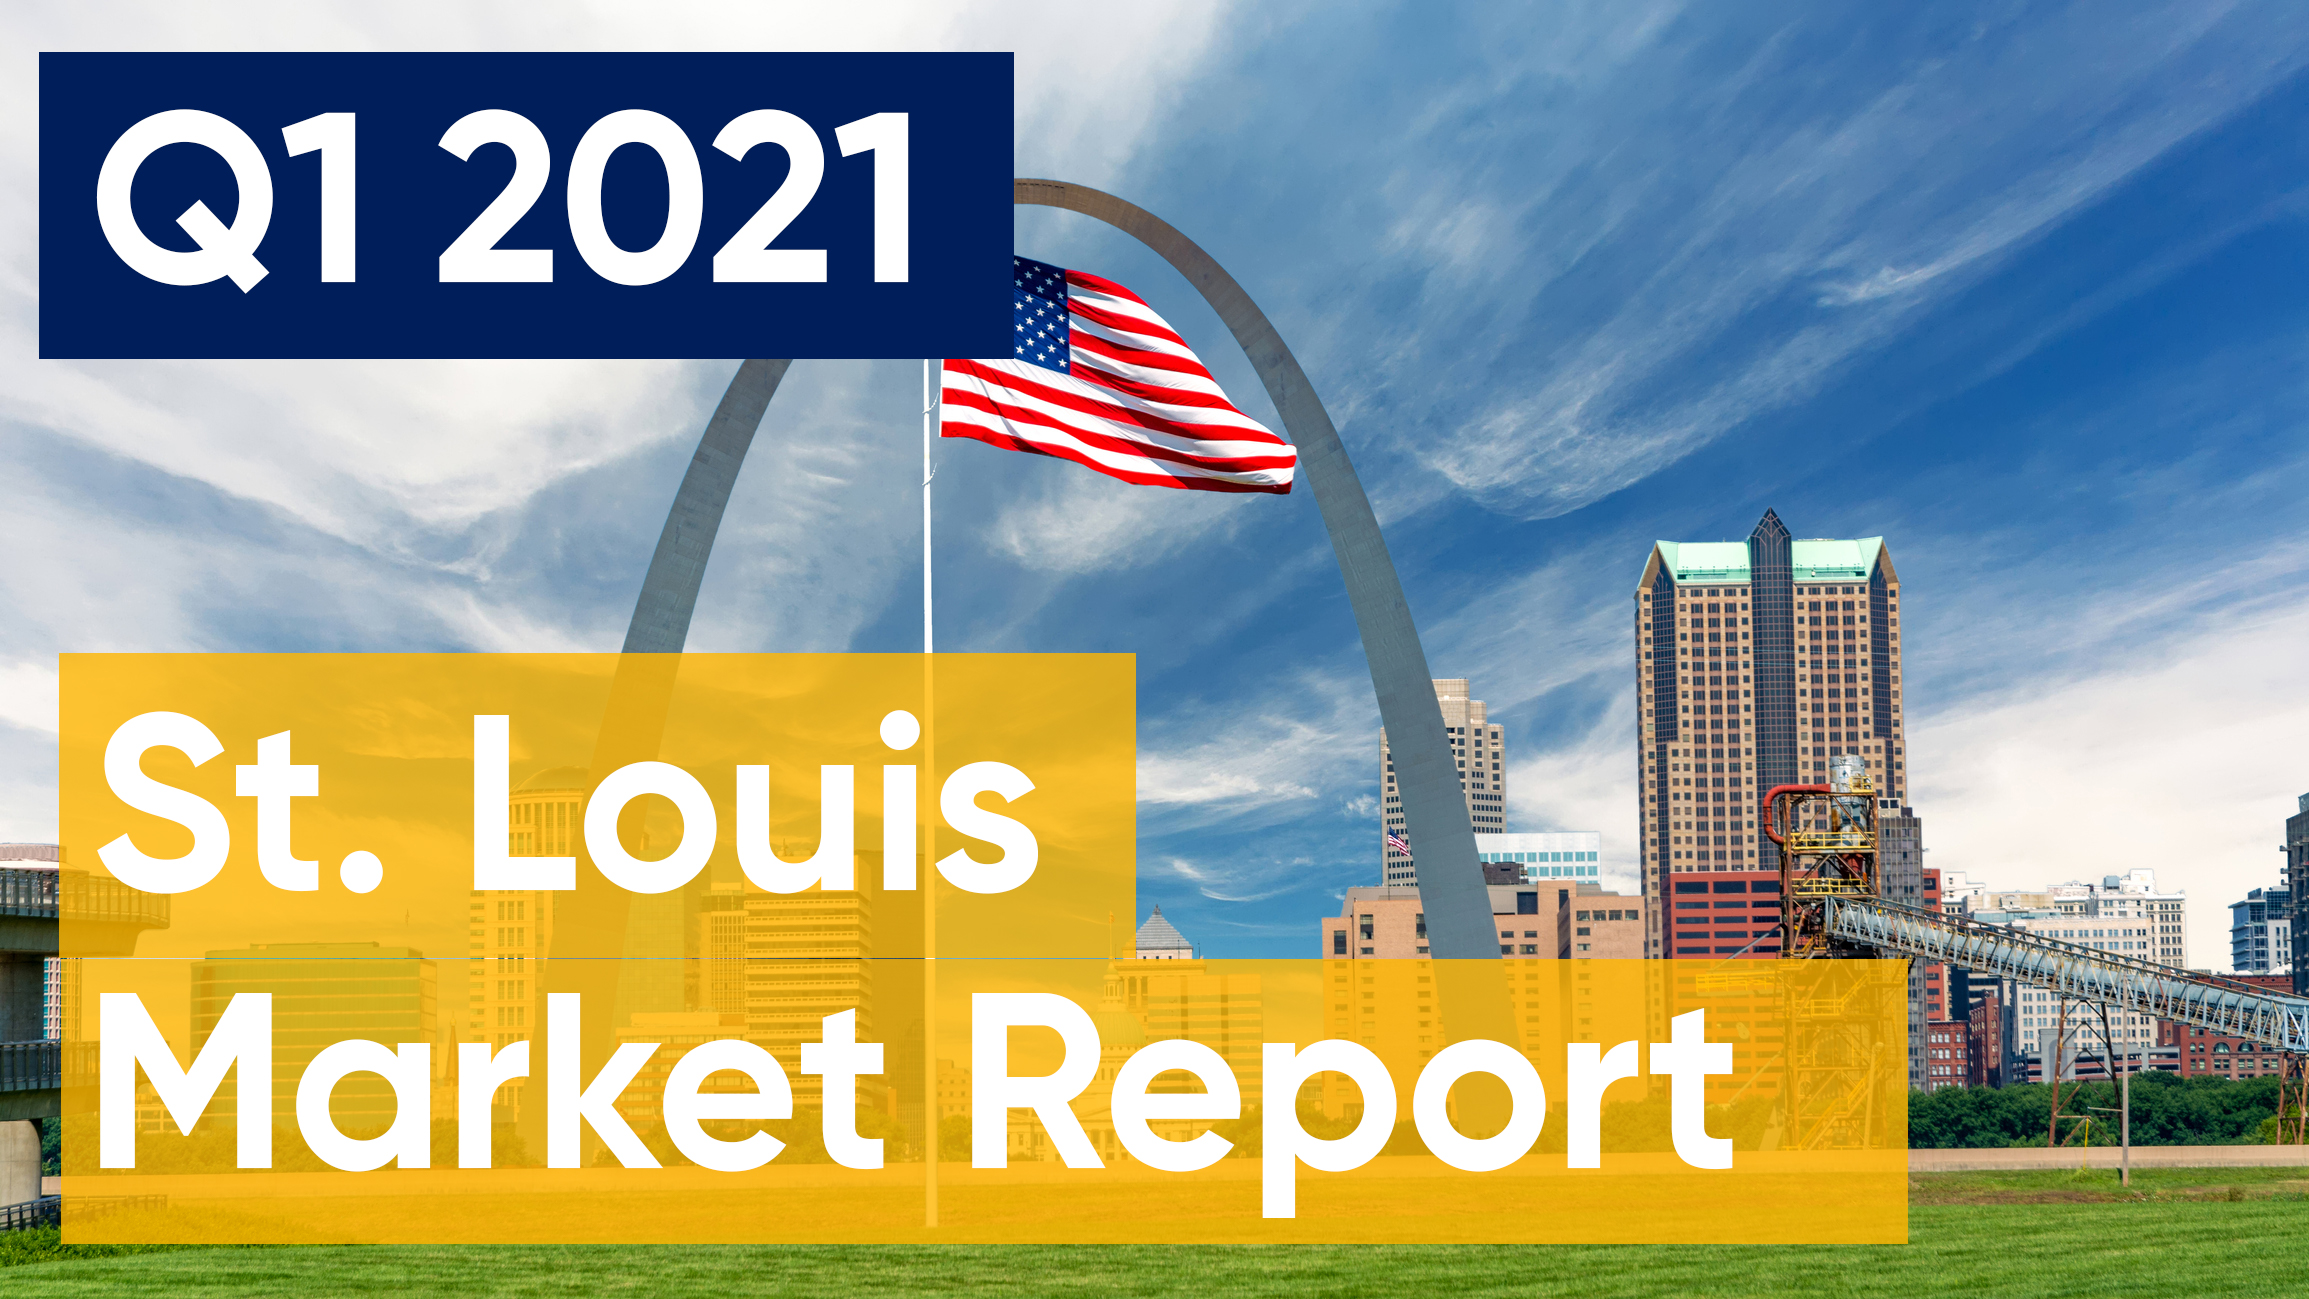 St. Louis market Report 